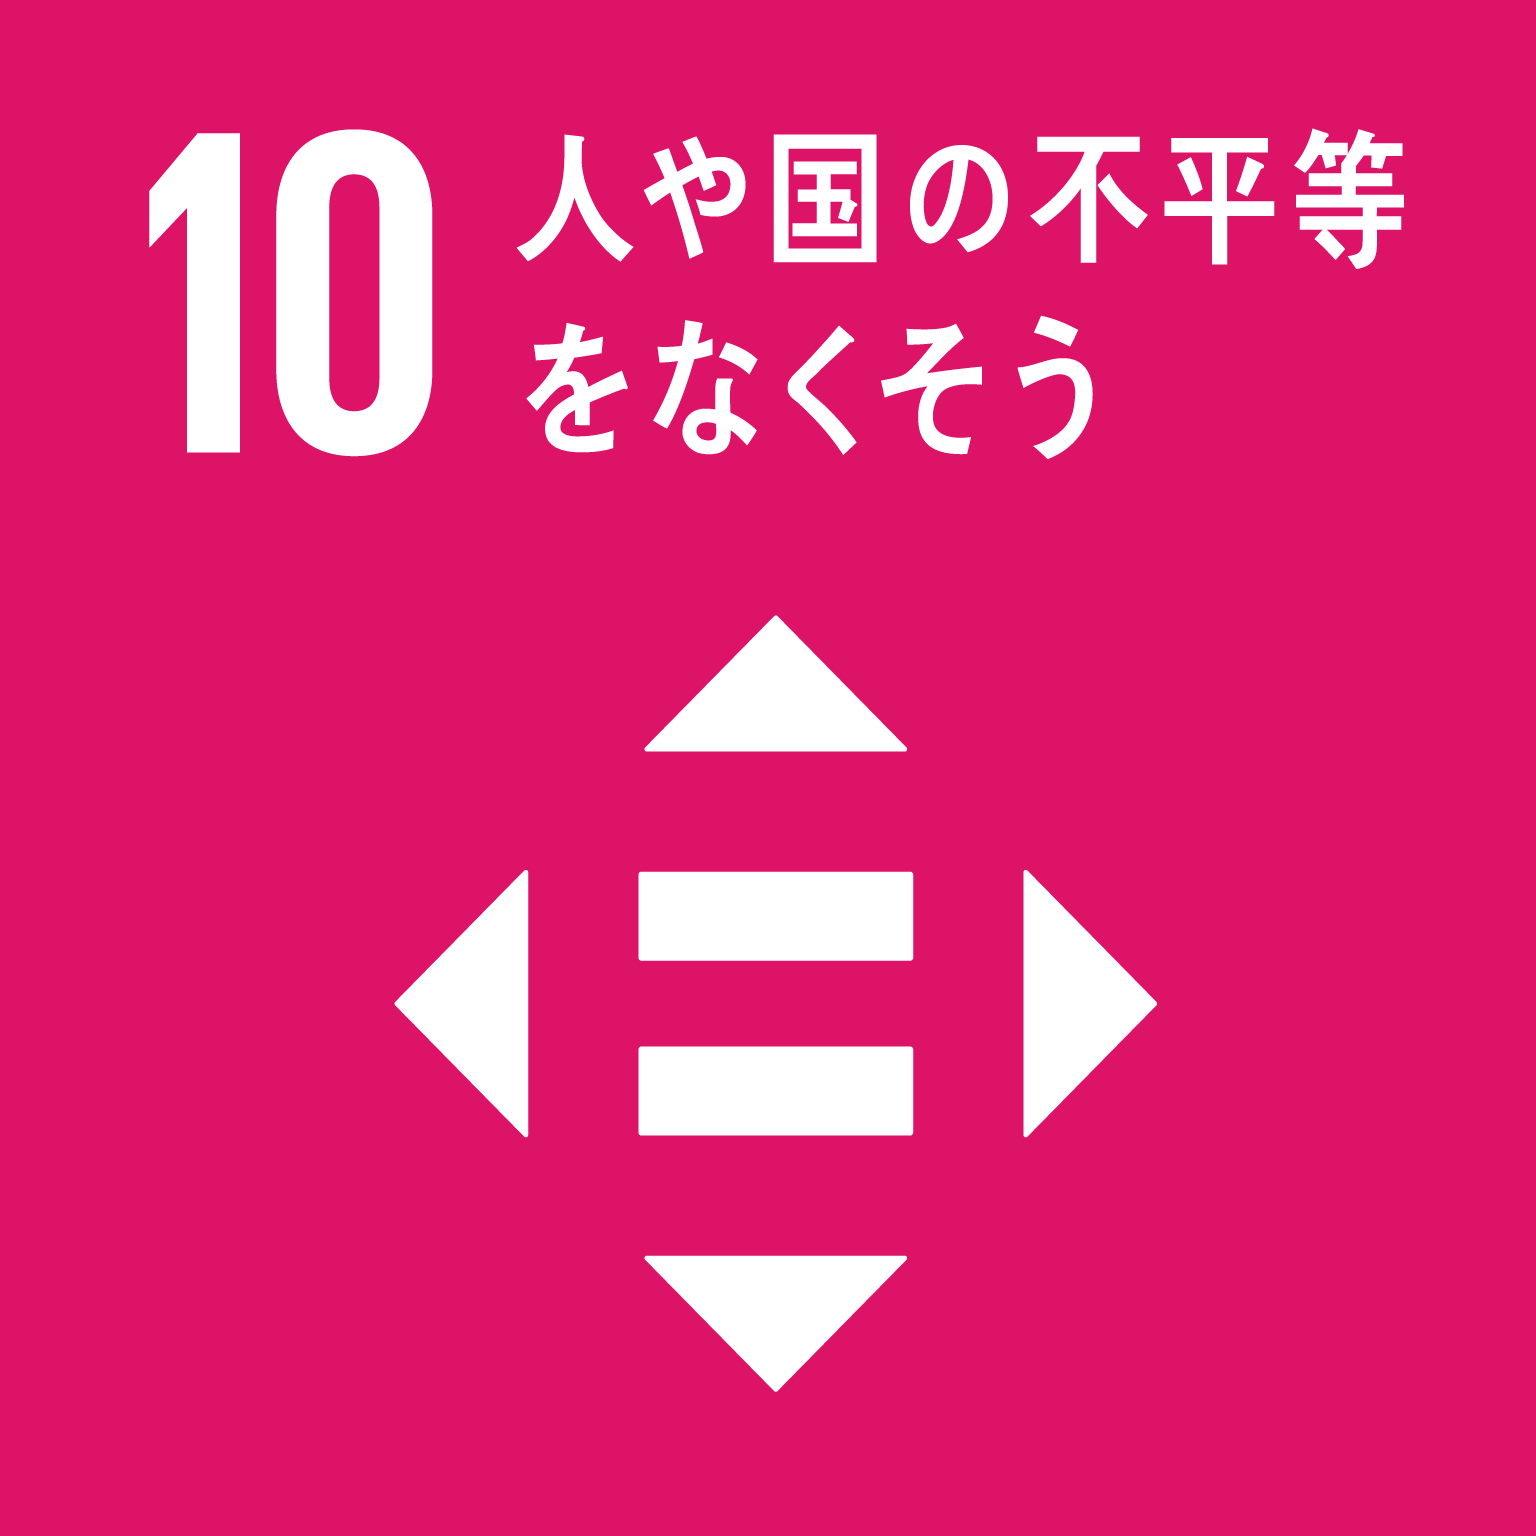 目標10人や国の不平等をなくそうのロゴ